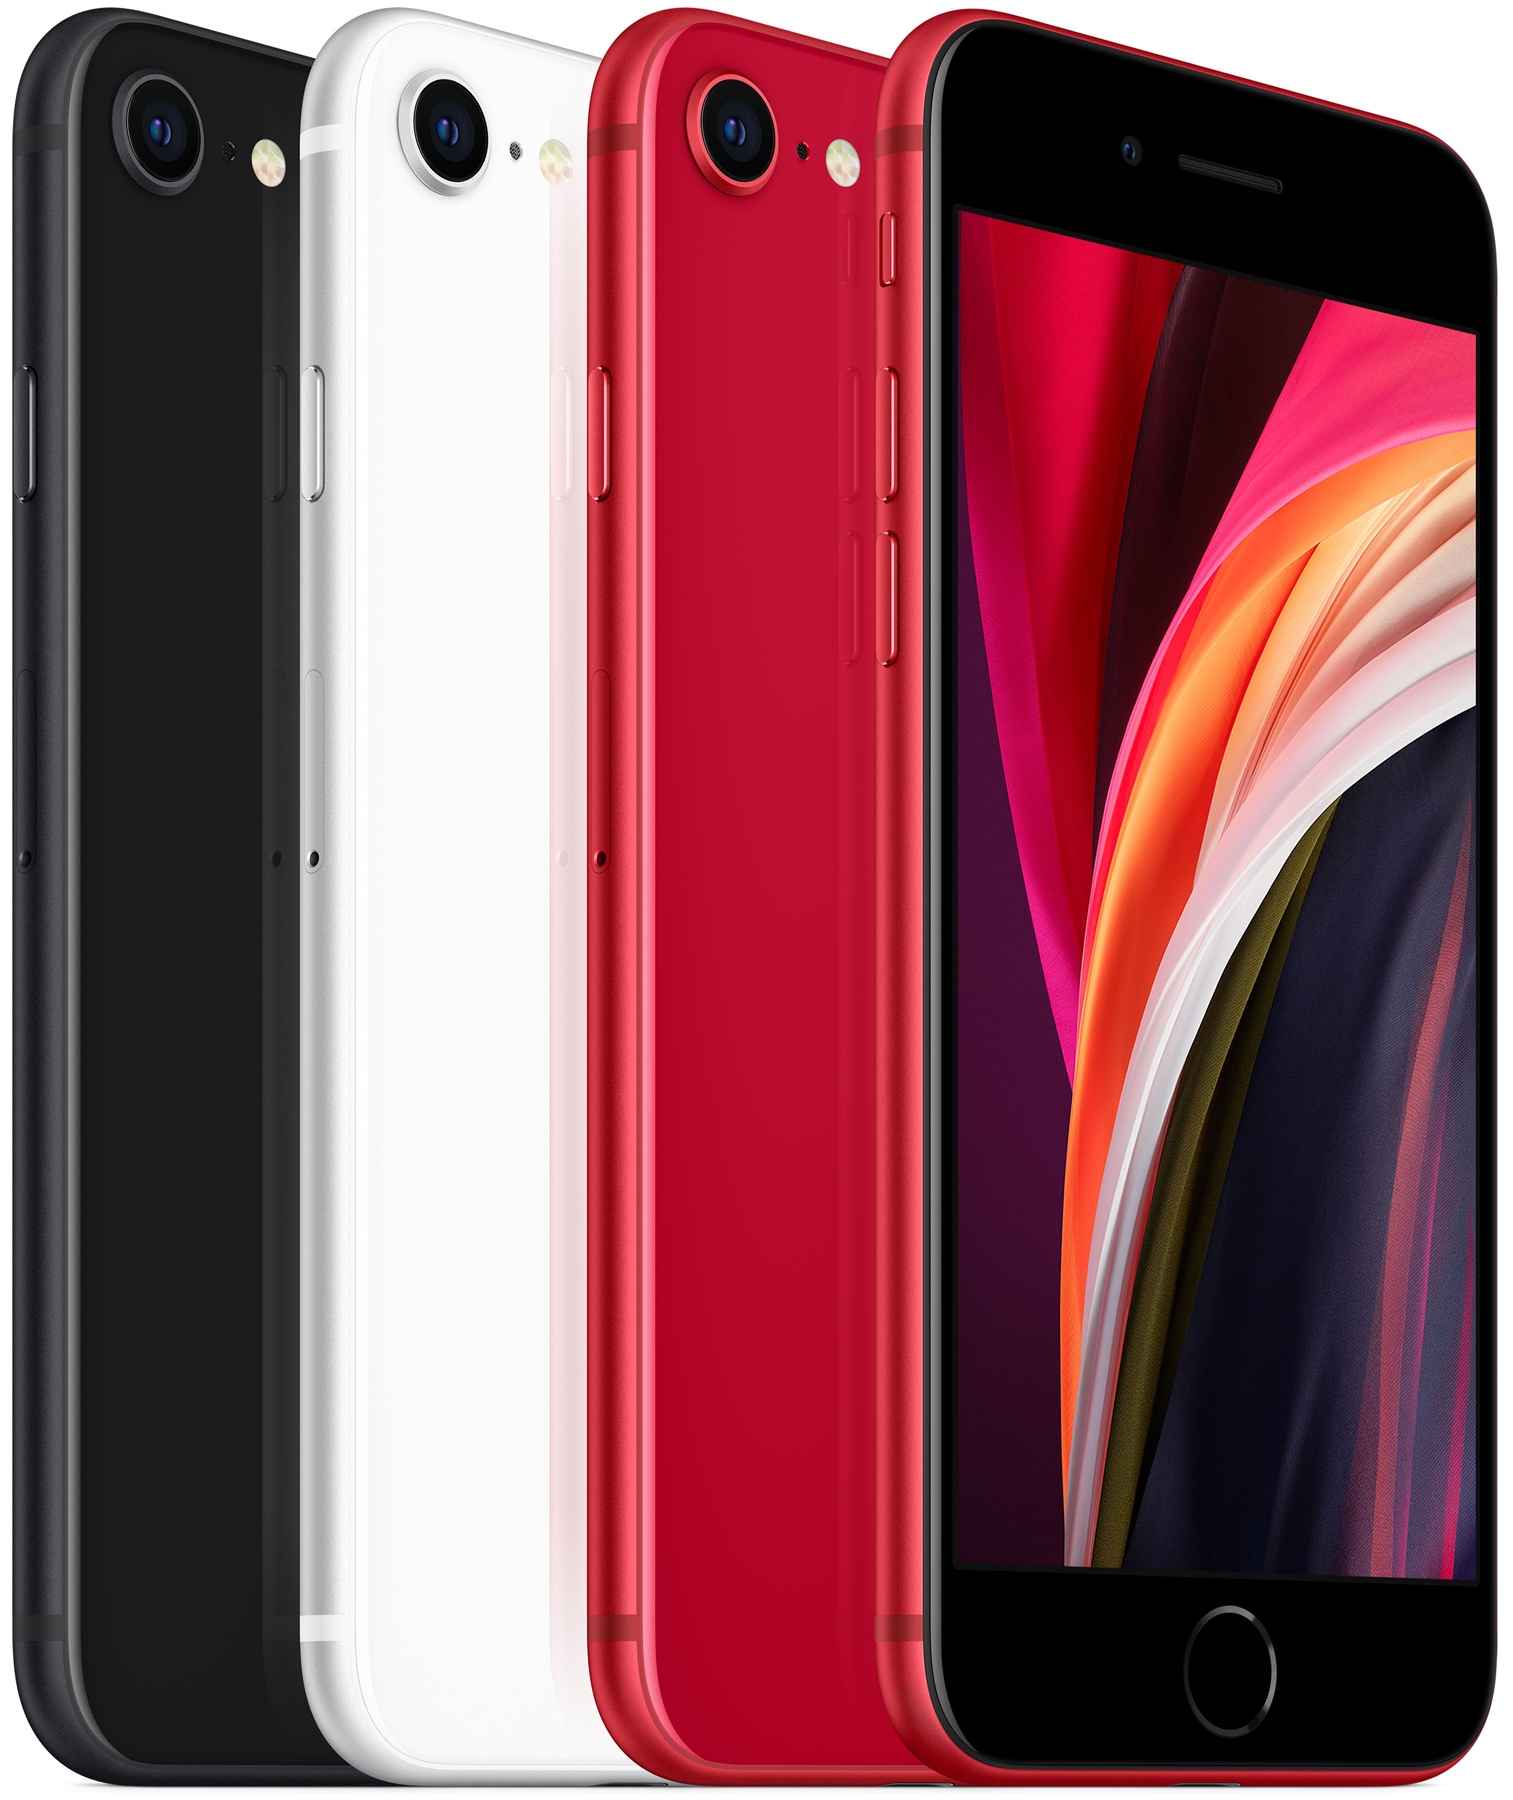 Смартфон Apple iPhone SE 64Gb Red 2020 (MHGR3) - зображення 7